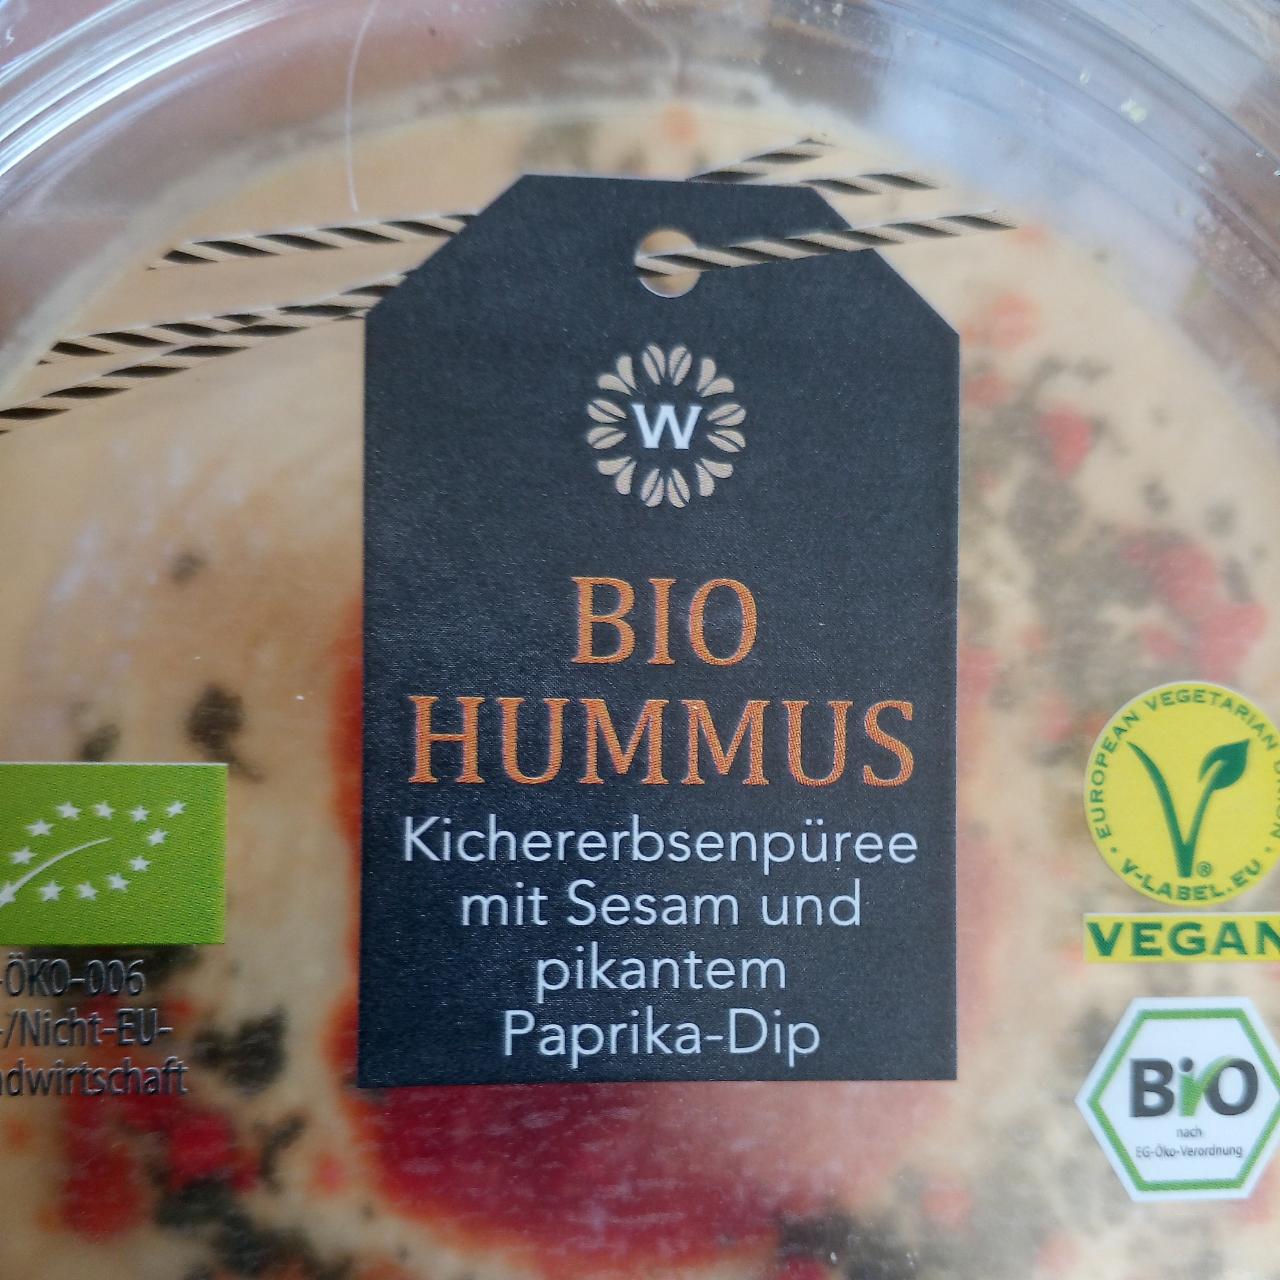 Fotografie - Bio hummus Kichererbsenpüree mit Sezam und pikantem Paprika-Dip